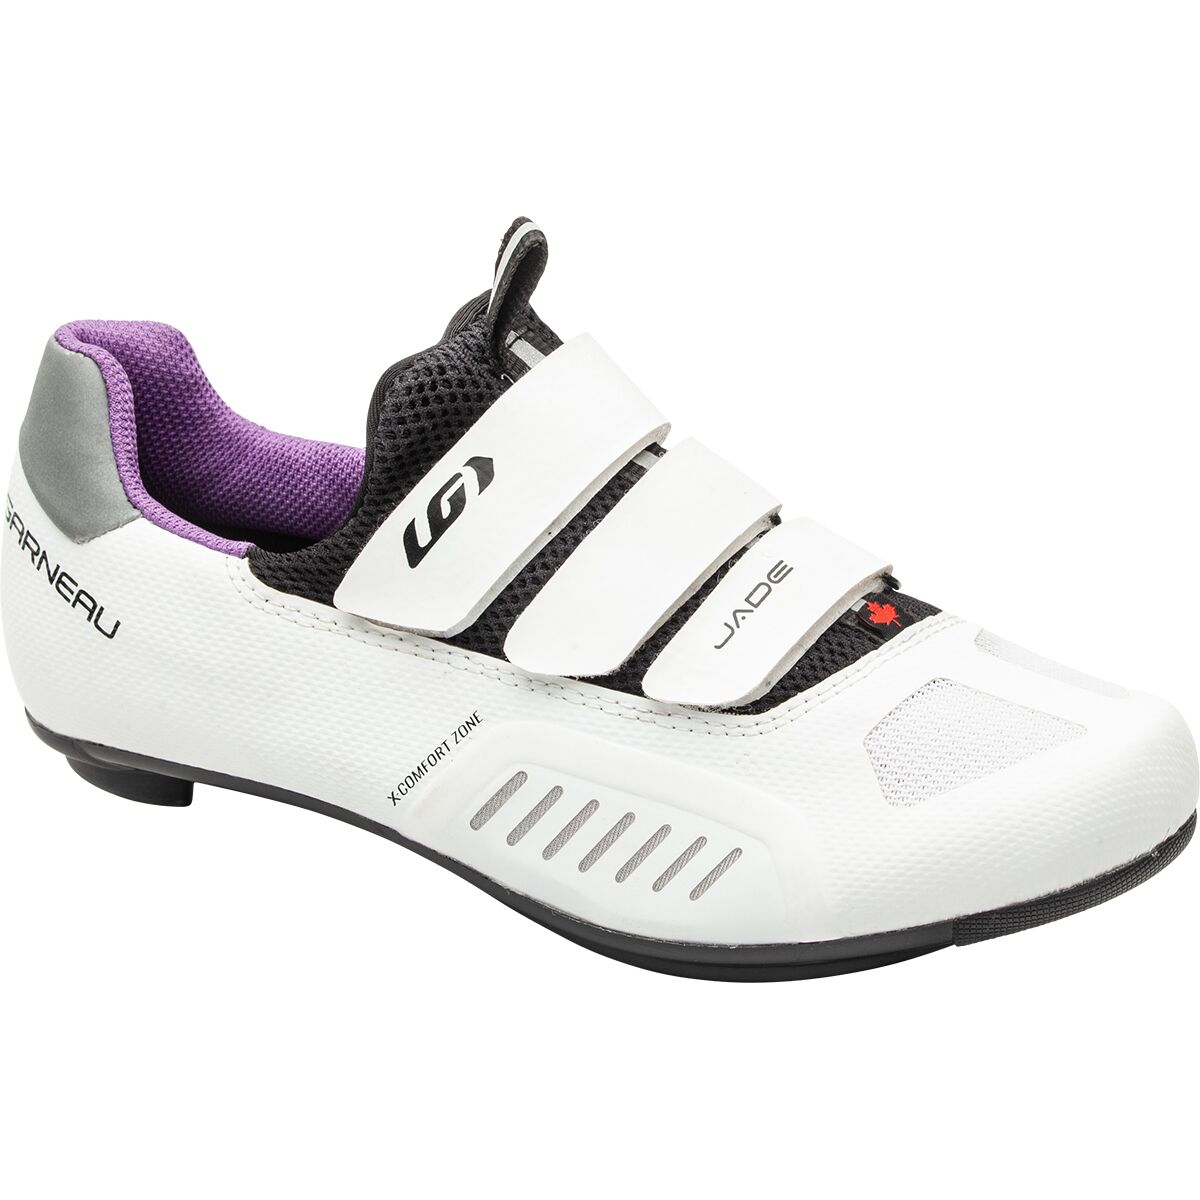 Louis Garneau Ergo Air Revo Cycling Shoes Women's Size EU 40 / US 7.5 White